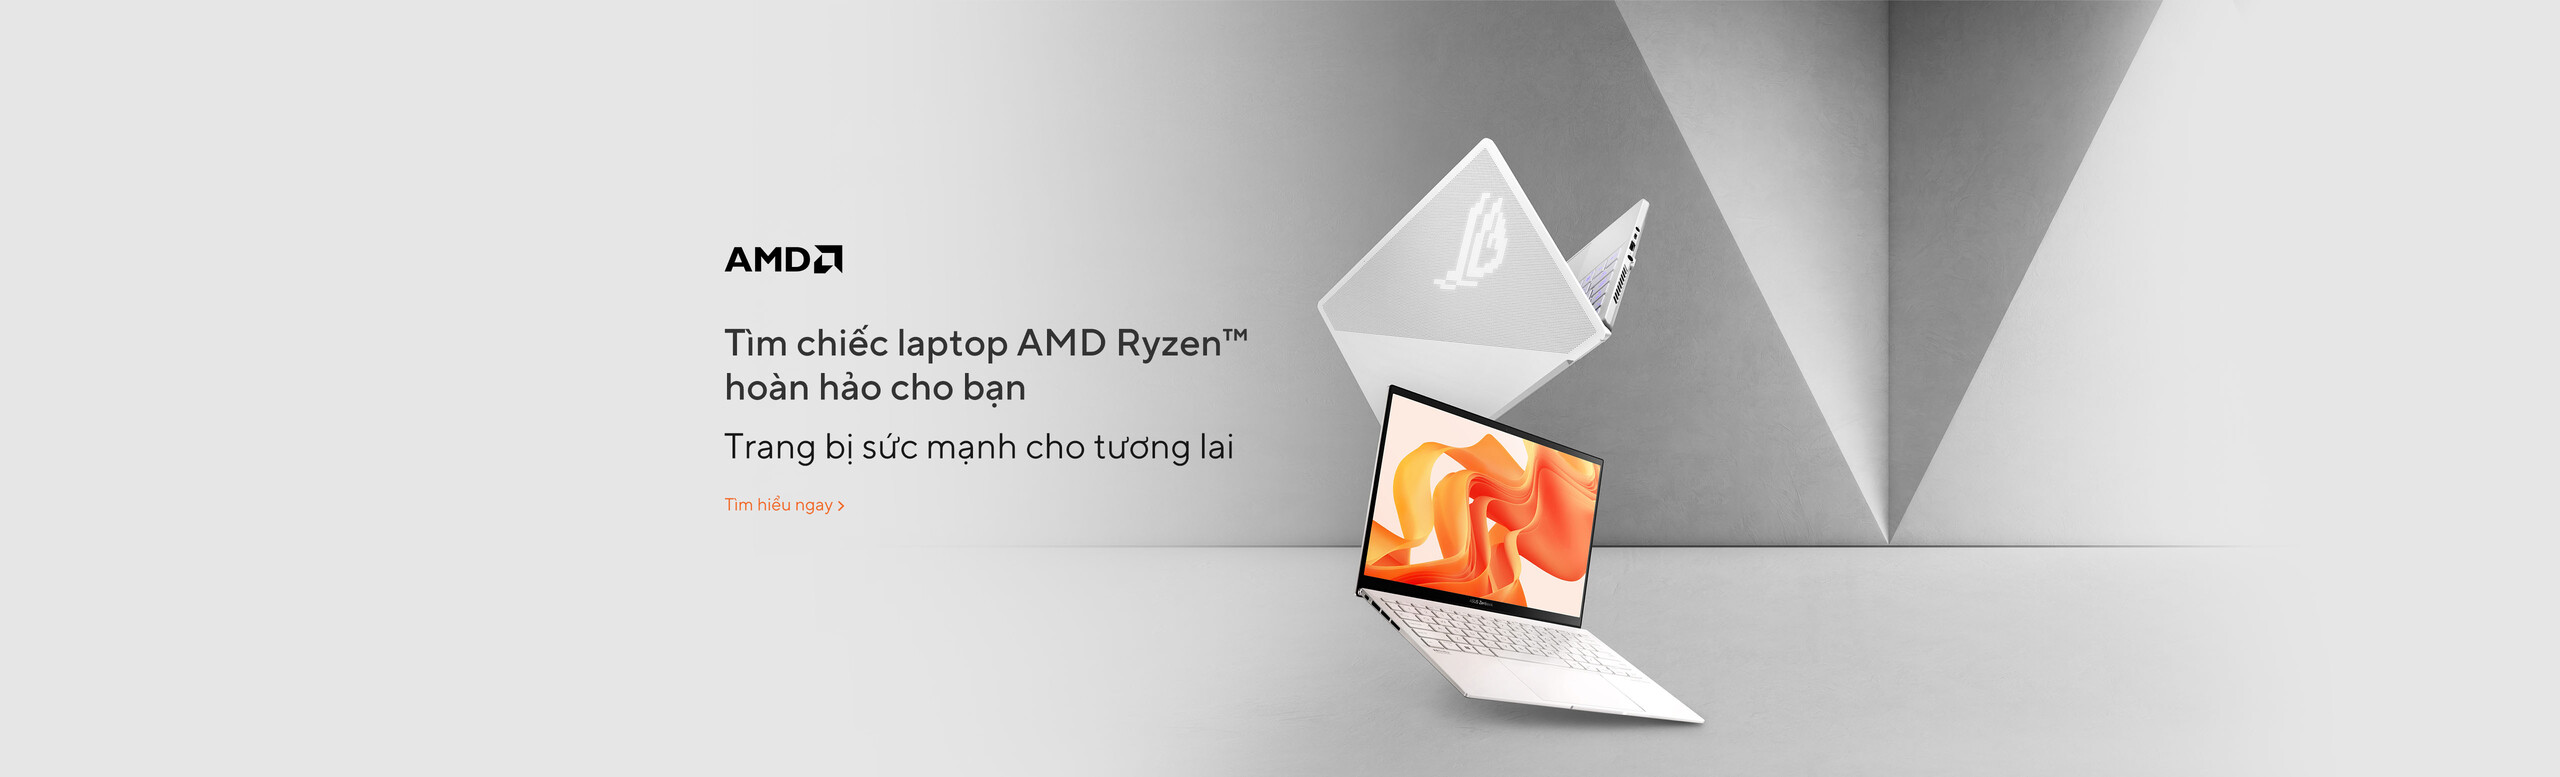 Tìm chiếc laptop AMD Ryzen™ hoàn hảo cho bạn